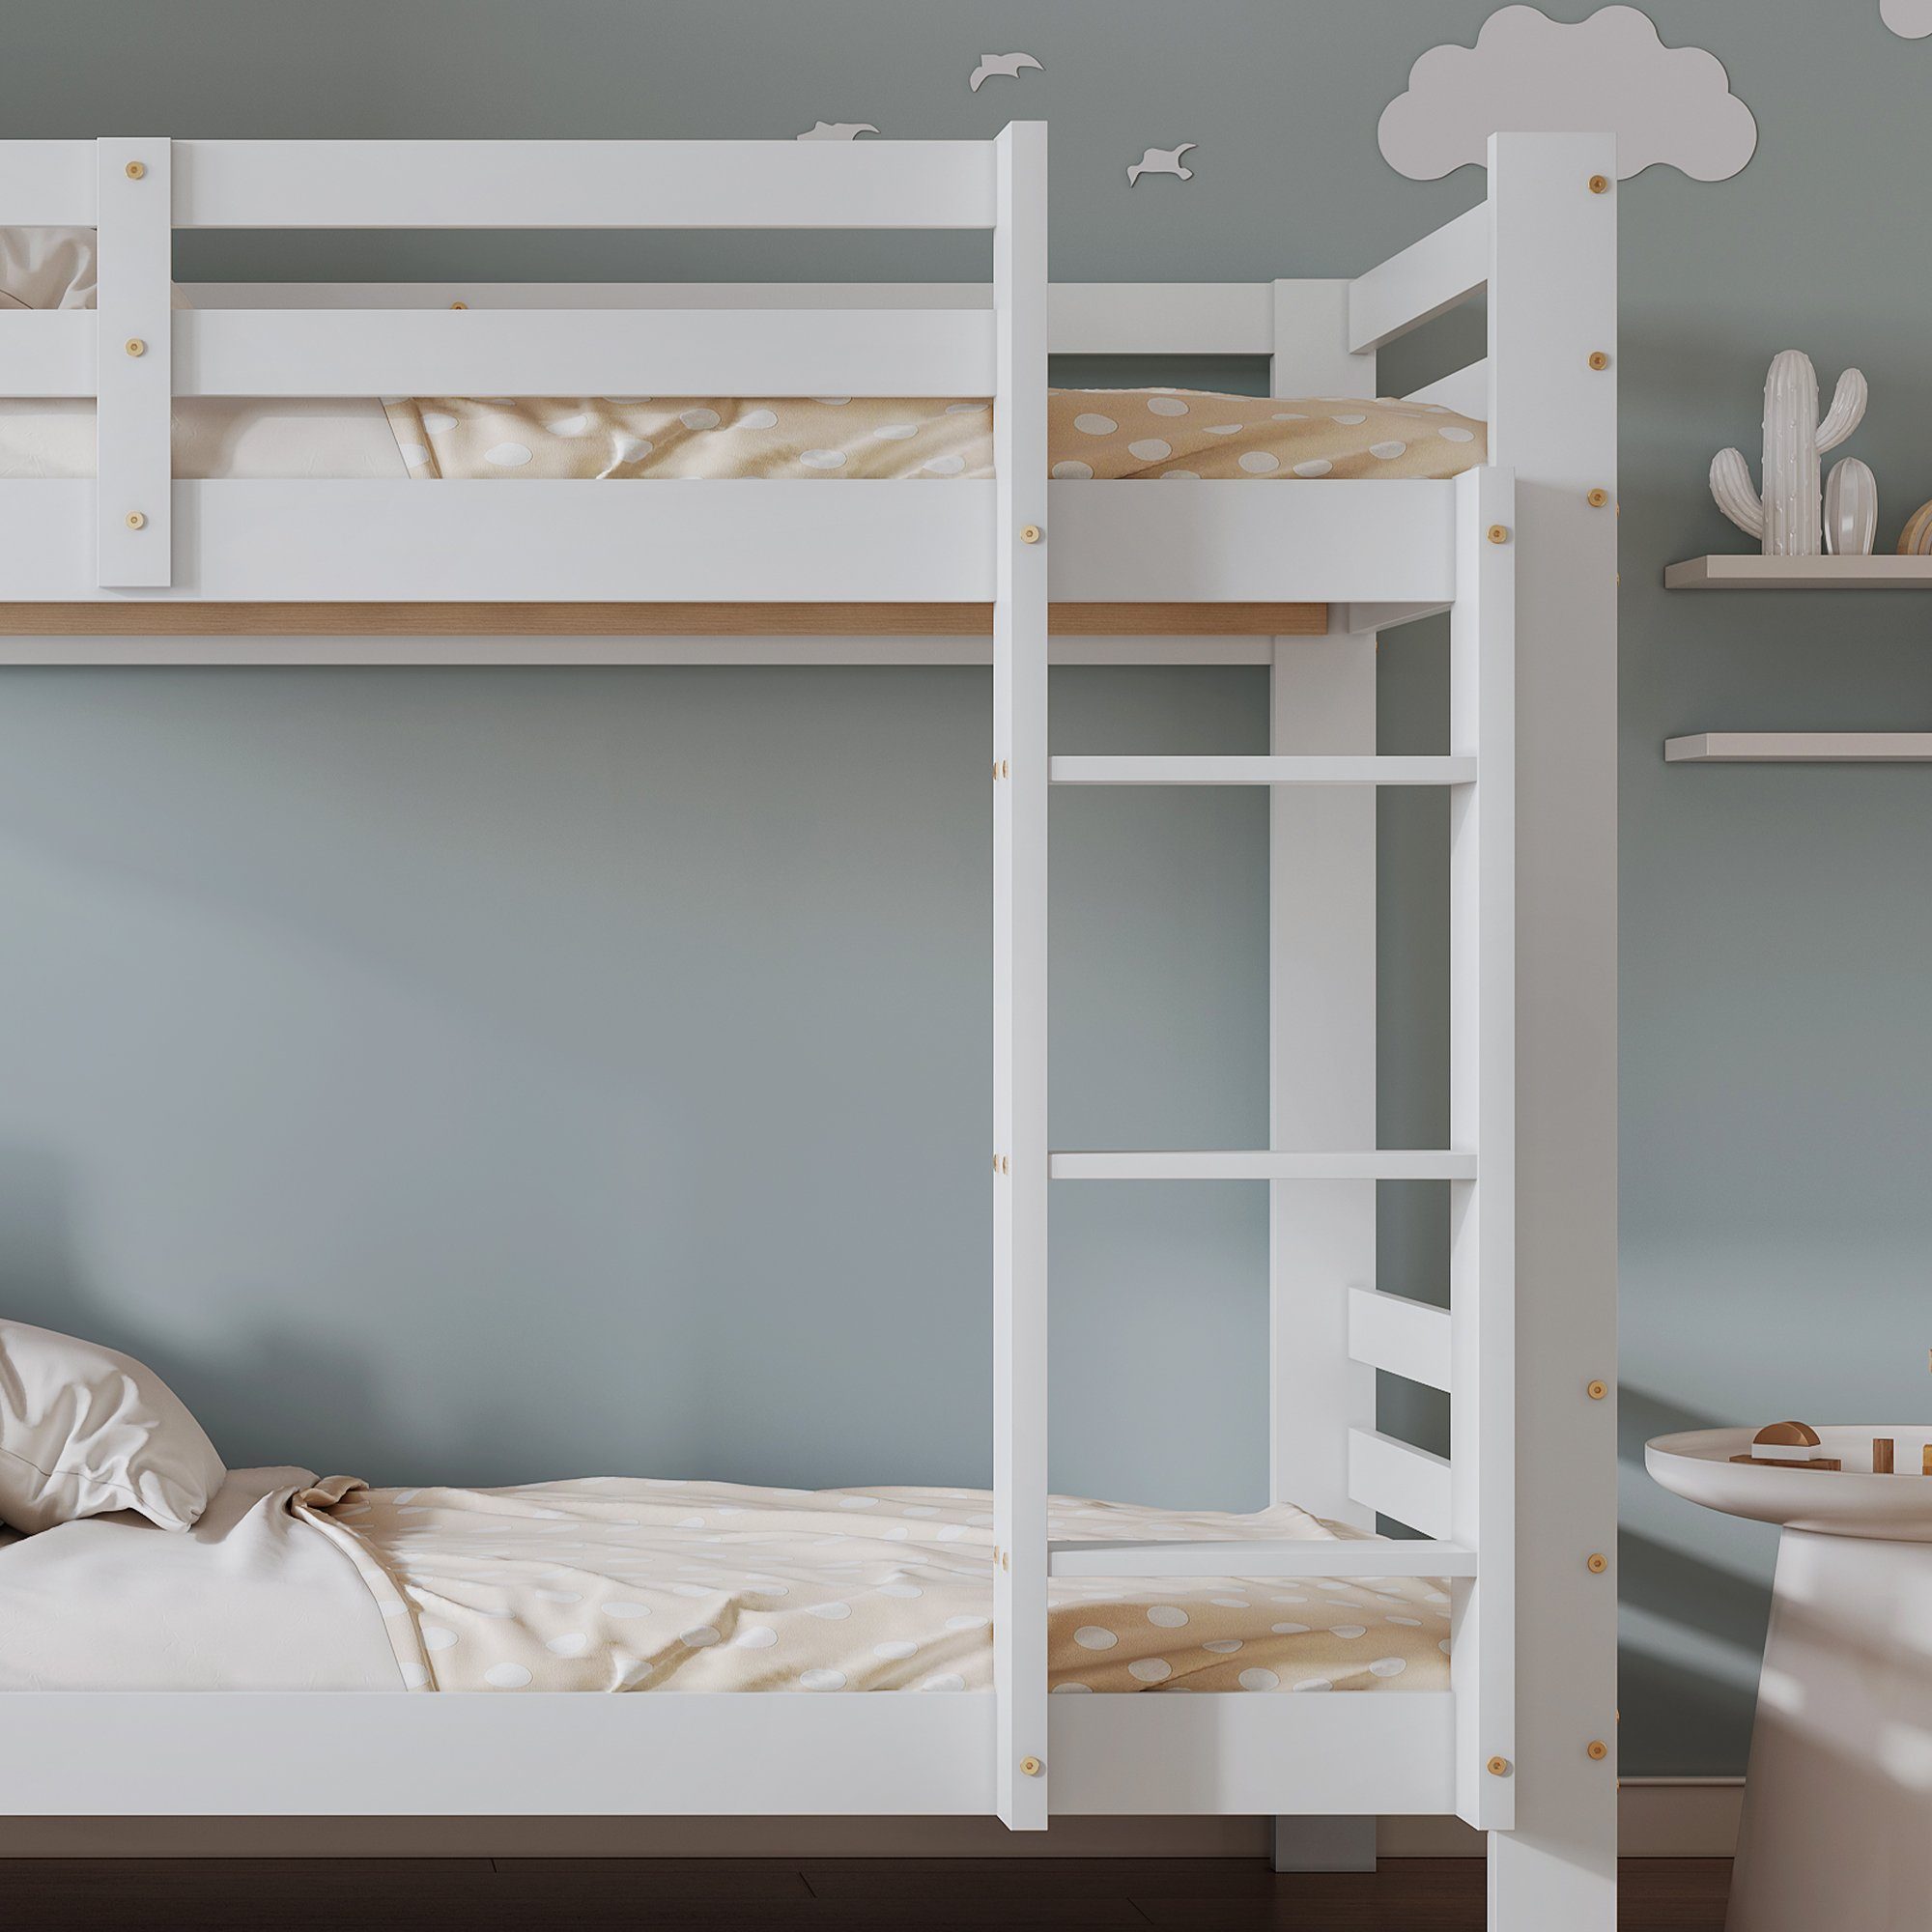 Ulife Etagenbett Kinderbett mit Regalen dreistufiger,Stauraum-Holzbett und